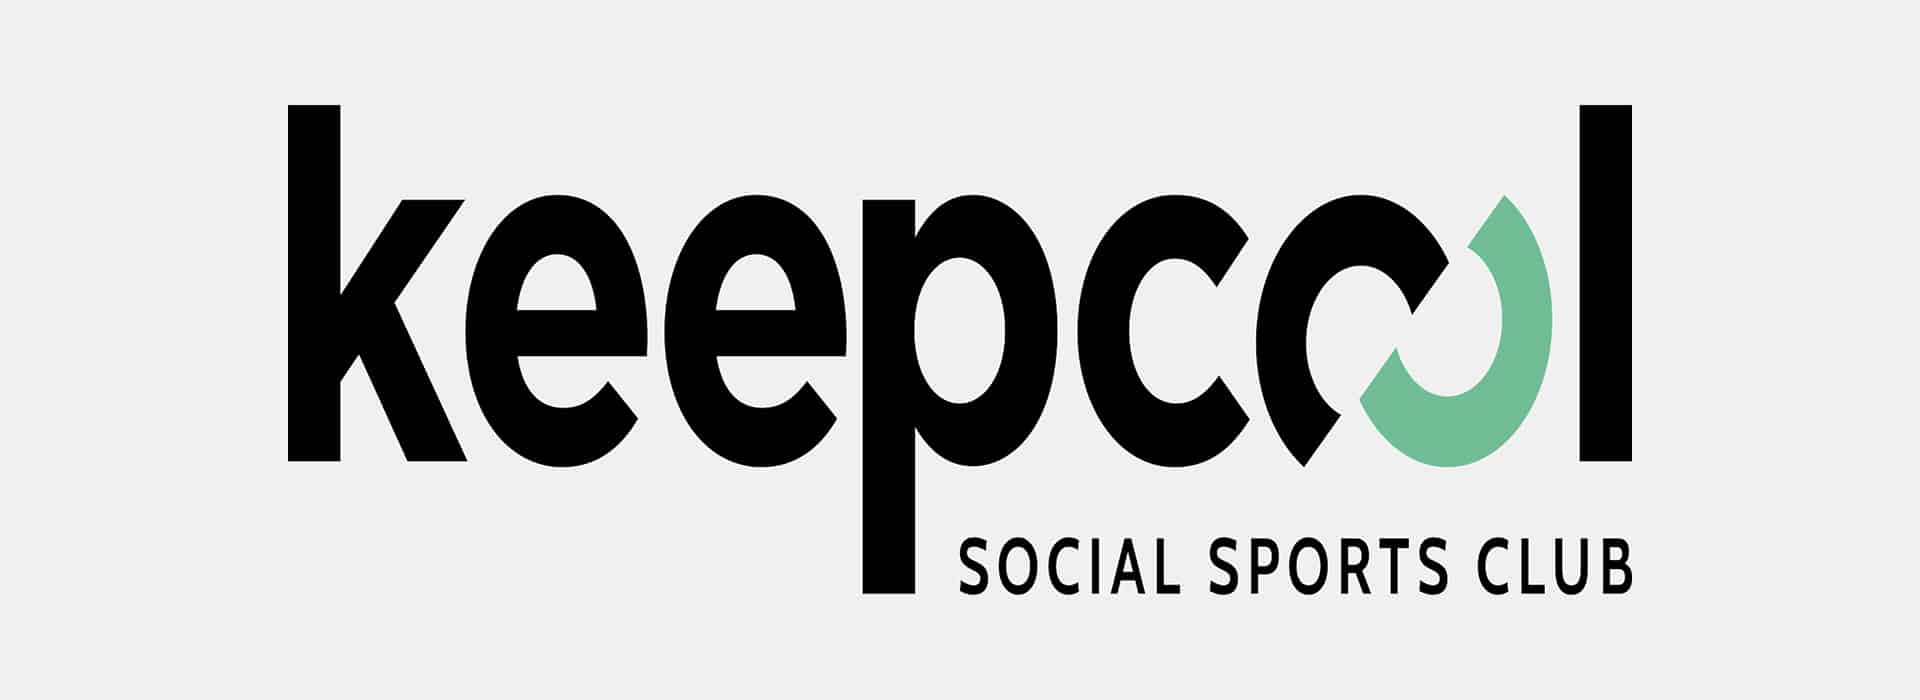 Le logo de la marque KeepCool